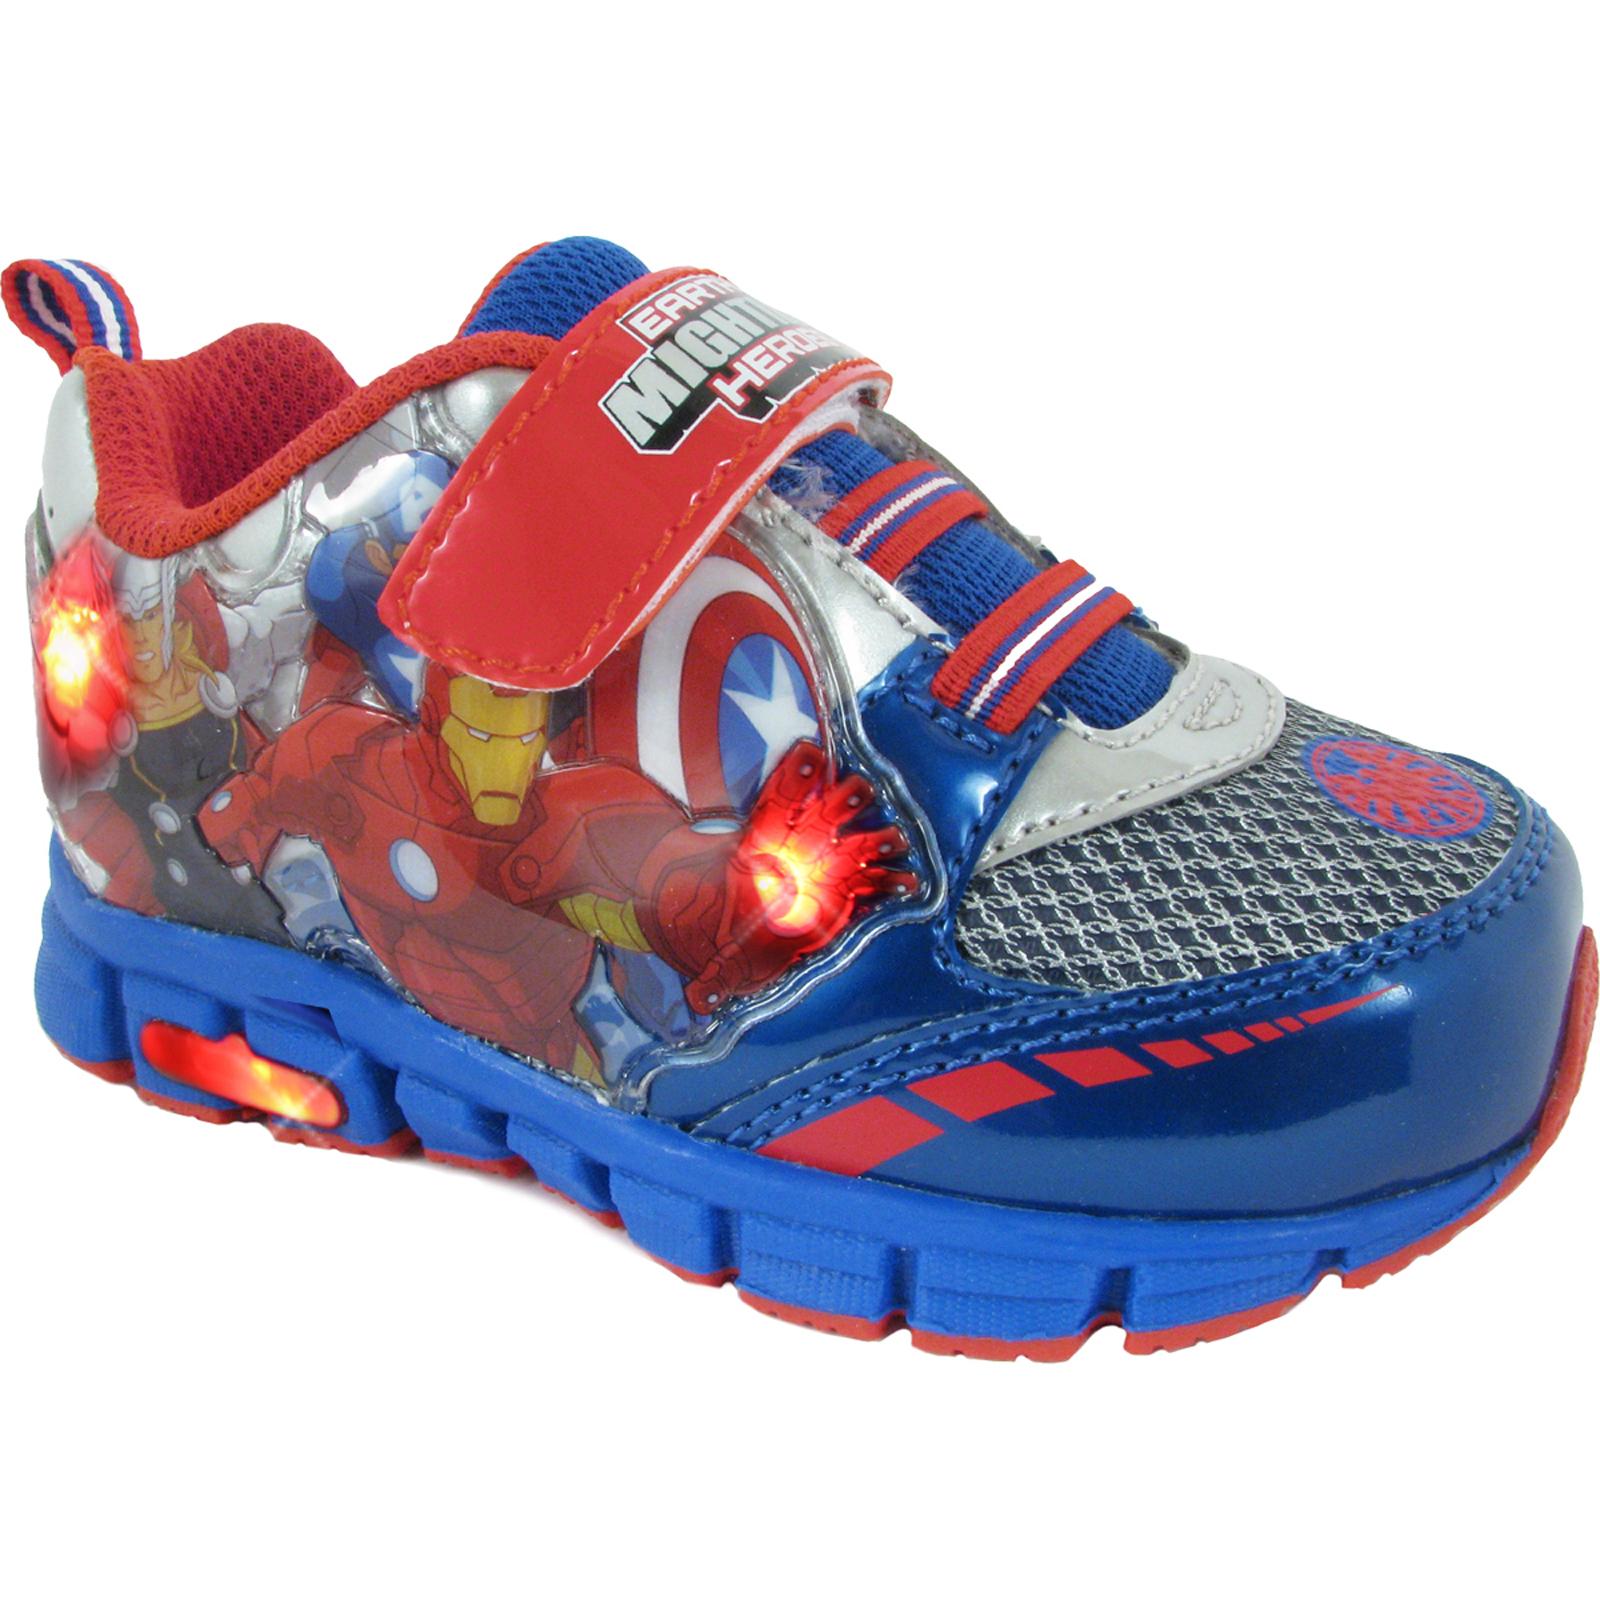 Marvel The Avengers Toddler Boy's Blue/Red/White Light-Up Sneaker